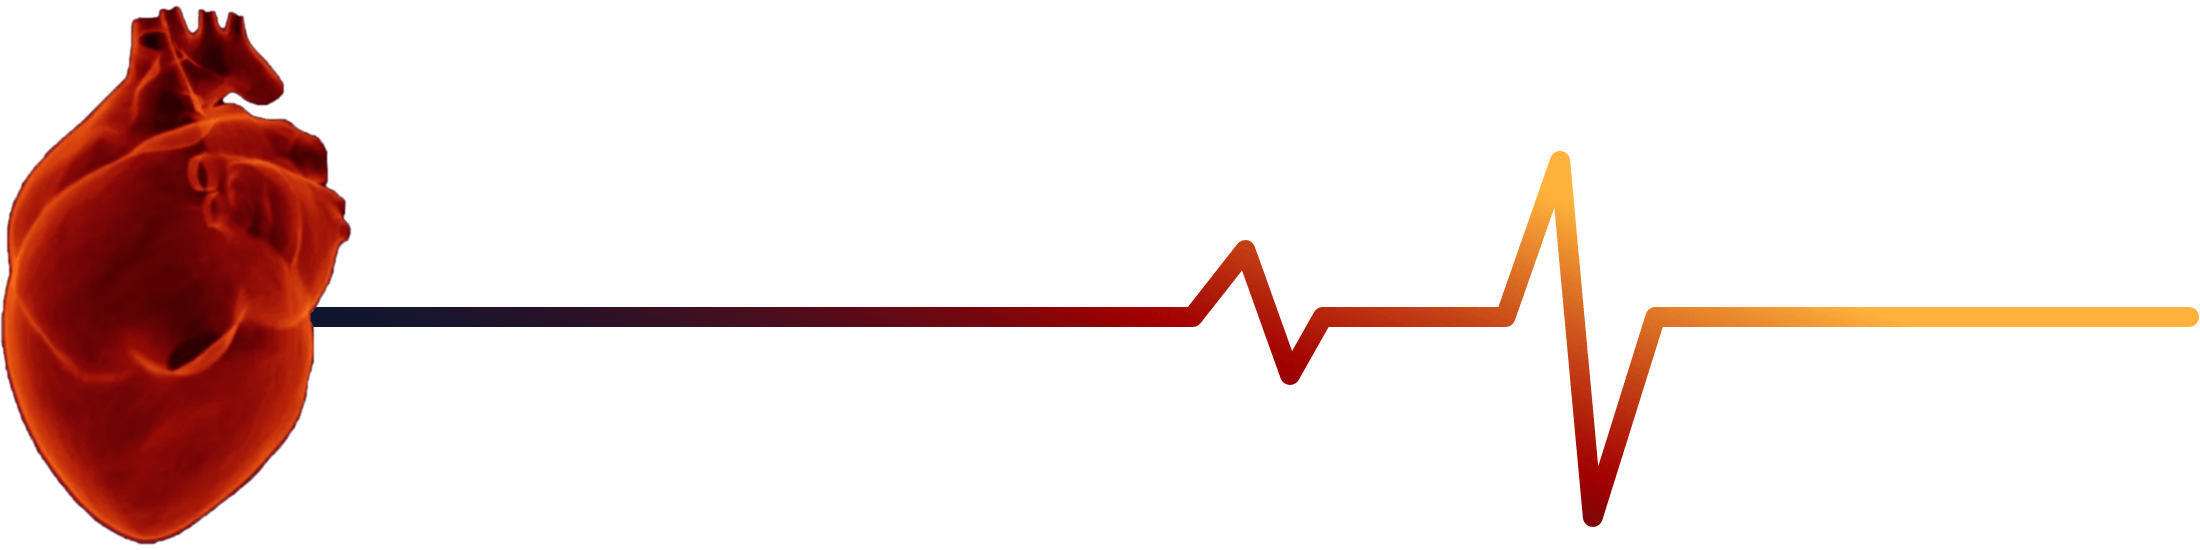 hjertediagnostik-logo-hvid